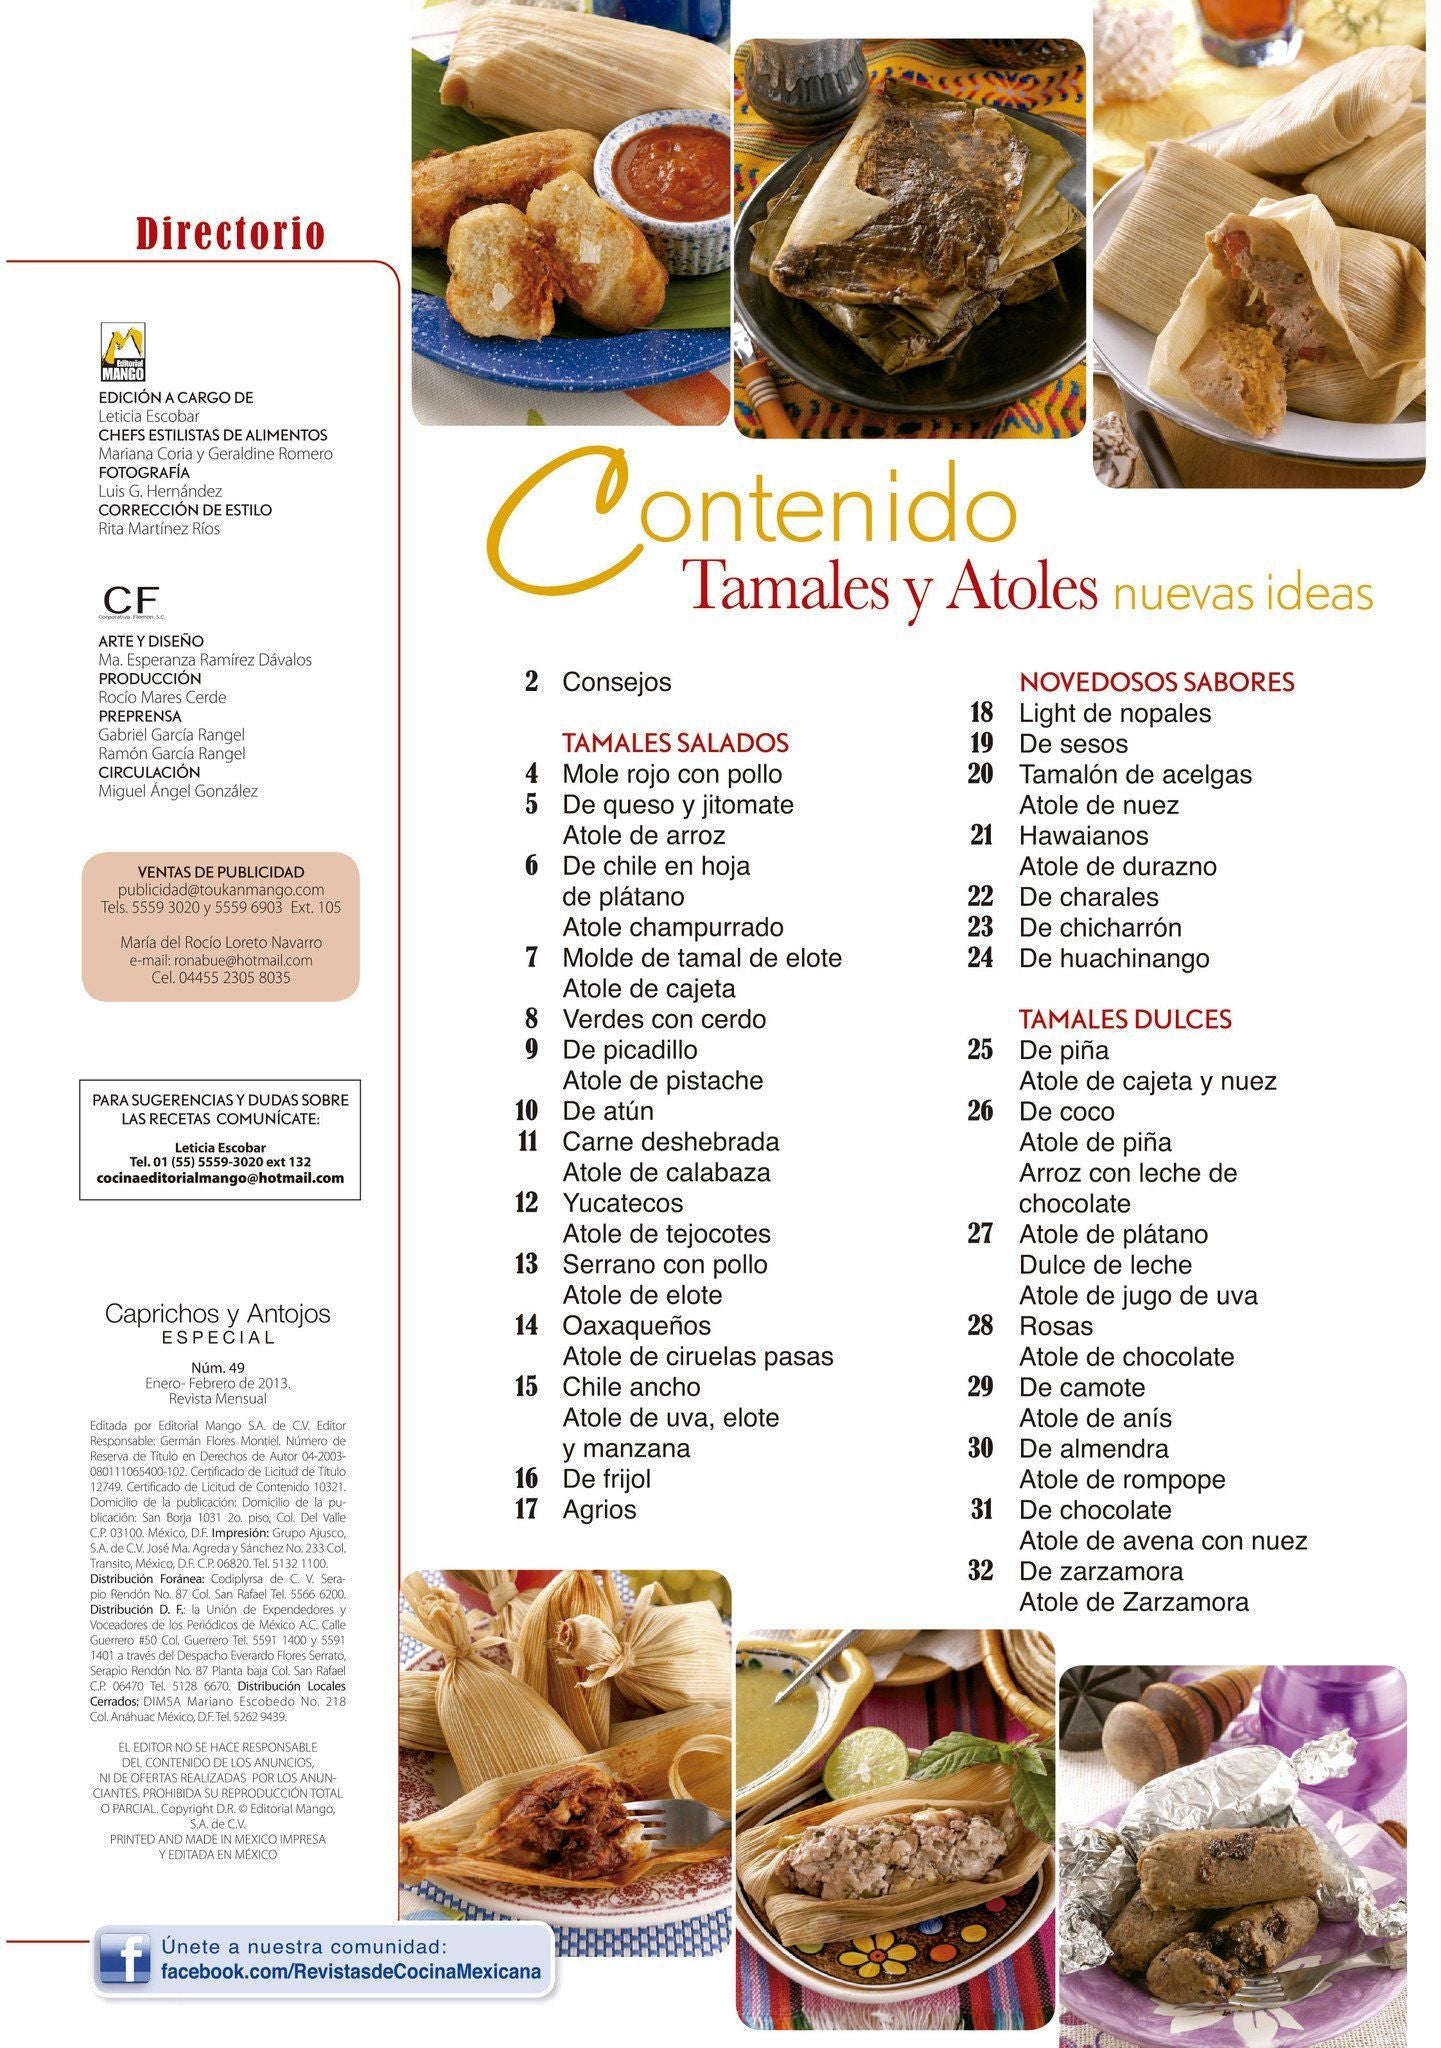 Caprichos y Antojos Especial 49 - Nuevos sabores de tamales y atoles - Formato Digital - ToukanMango